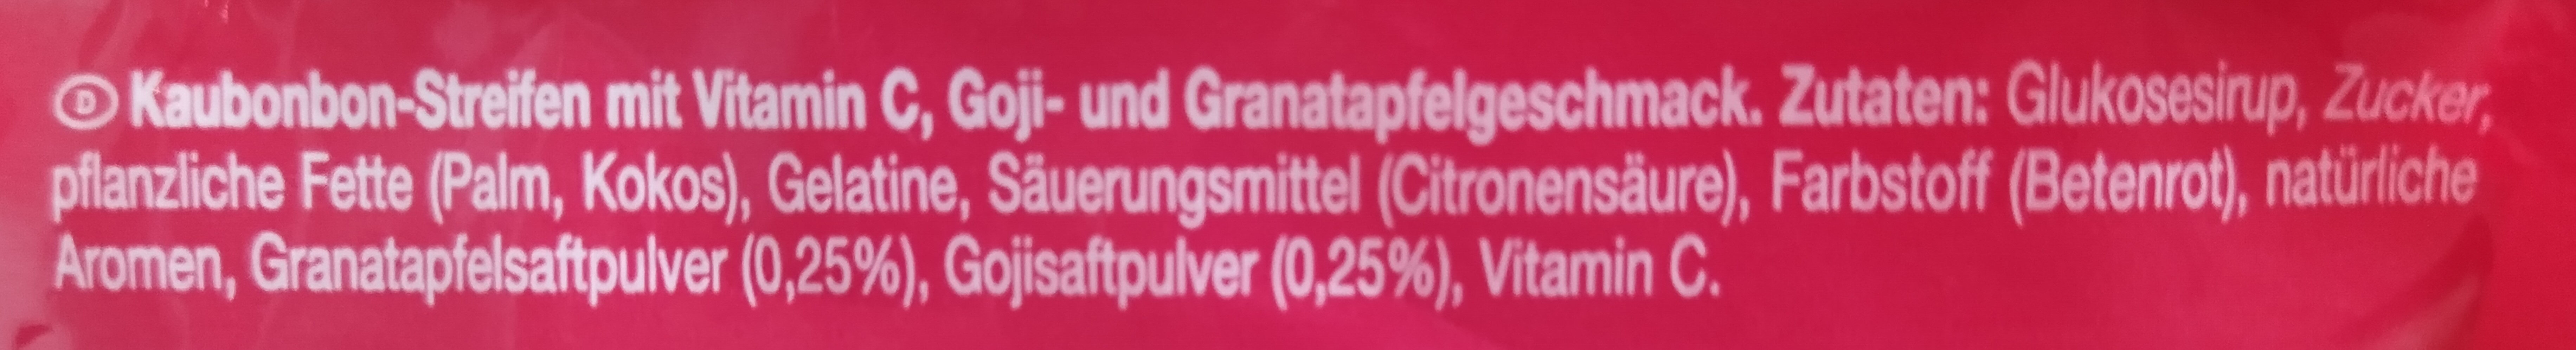 Superfrucht Minis Goji Granatapfel - Ingredienser - de